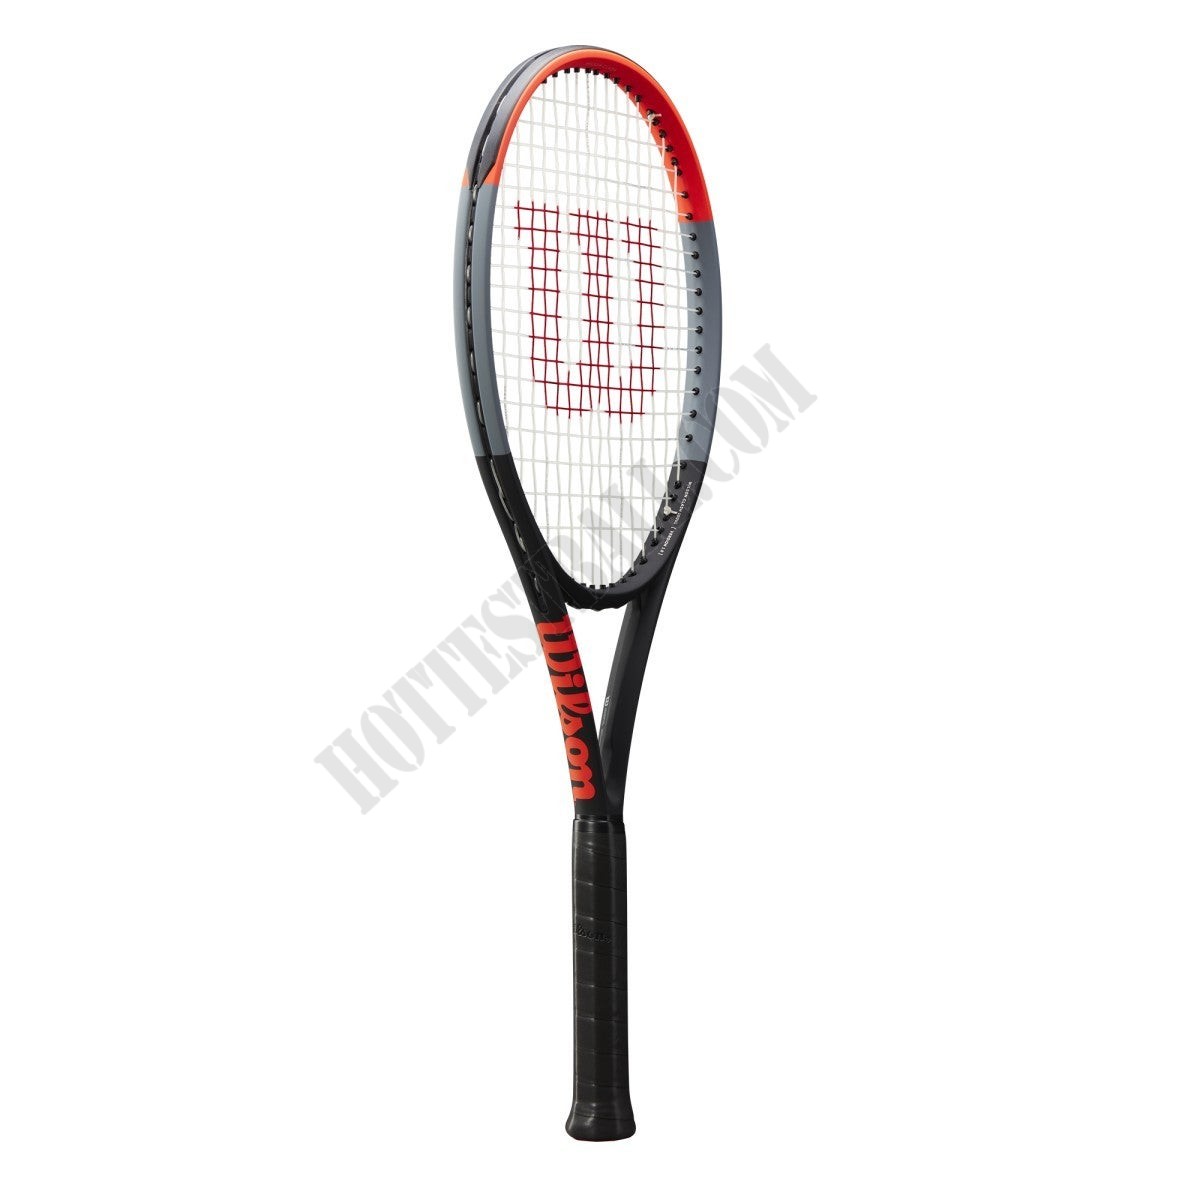 Clash 100UL Tennis Racket - Wilson Discount Store - Clash 100UL Tennis Racket - Wilson Discount Store